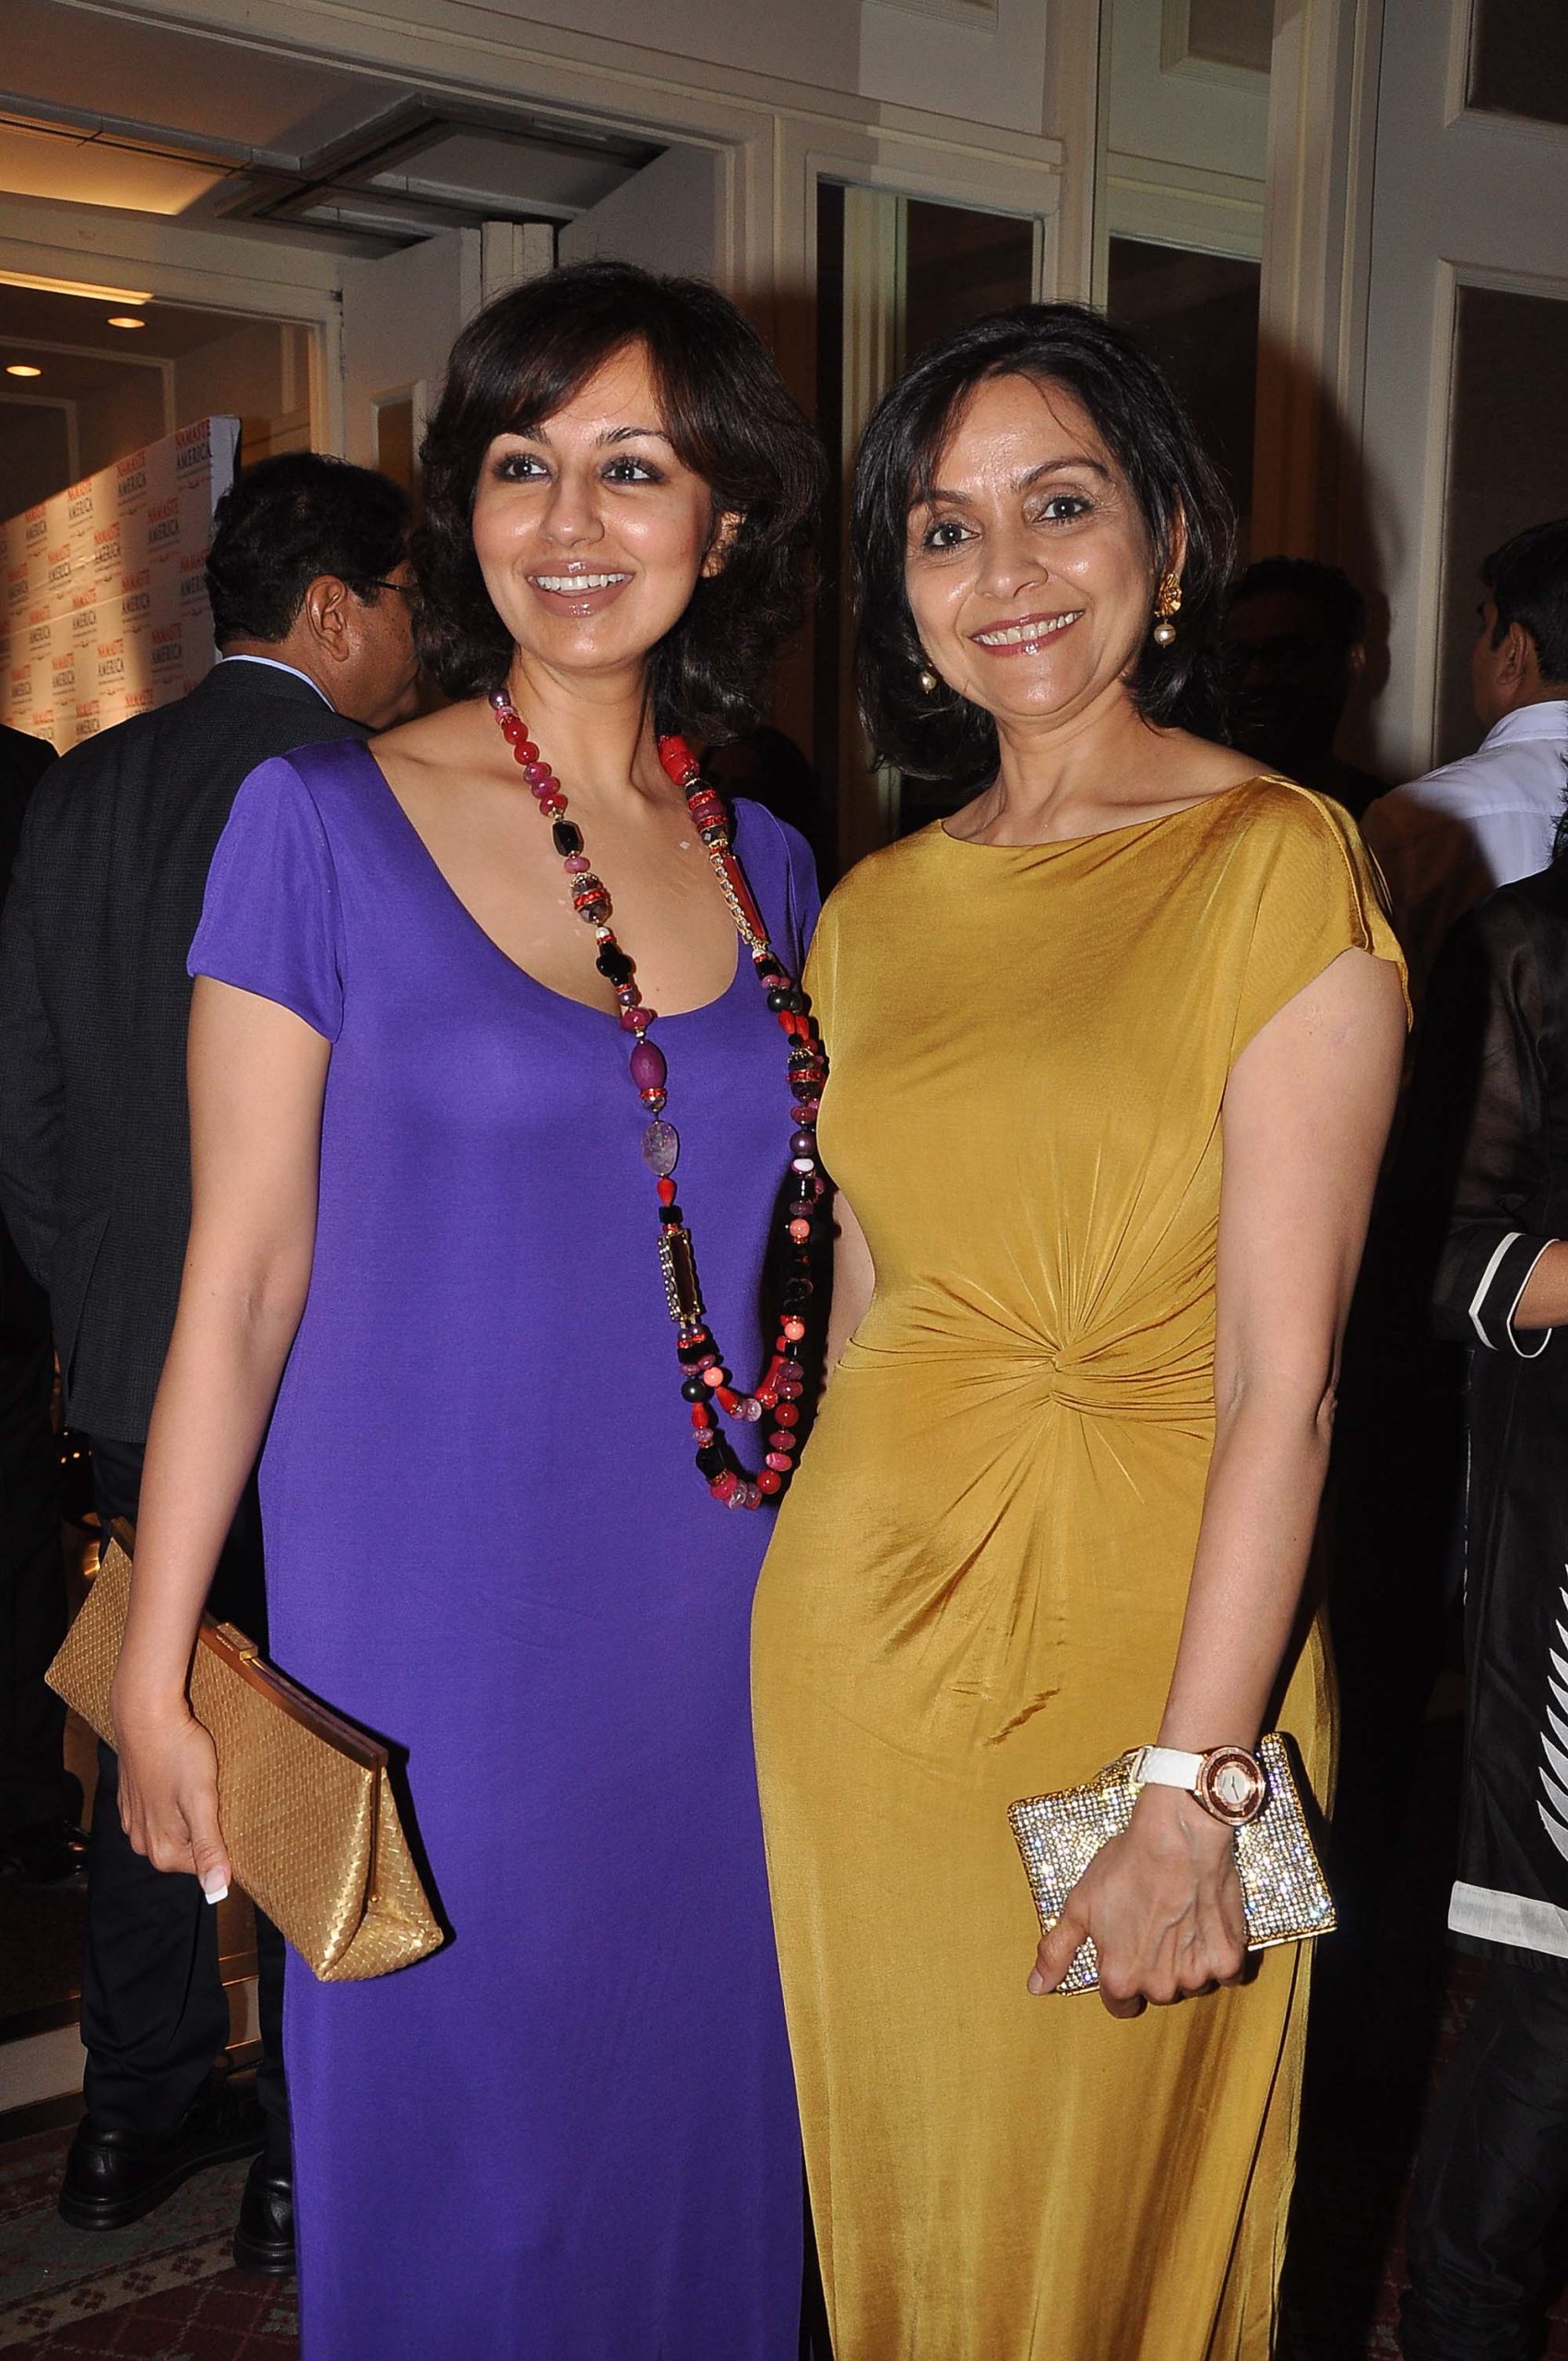 Reena Wadhwa and Dr. Alka Nishar, founder Aza